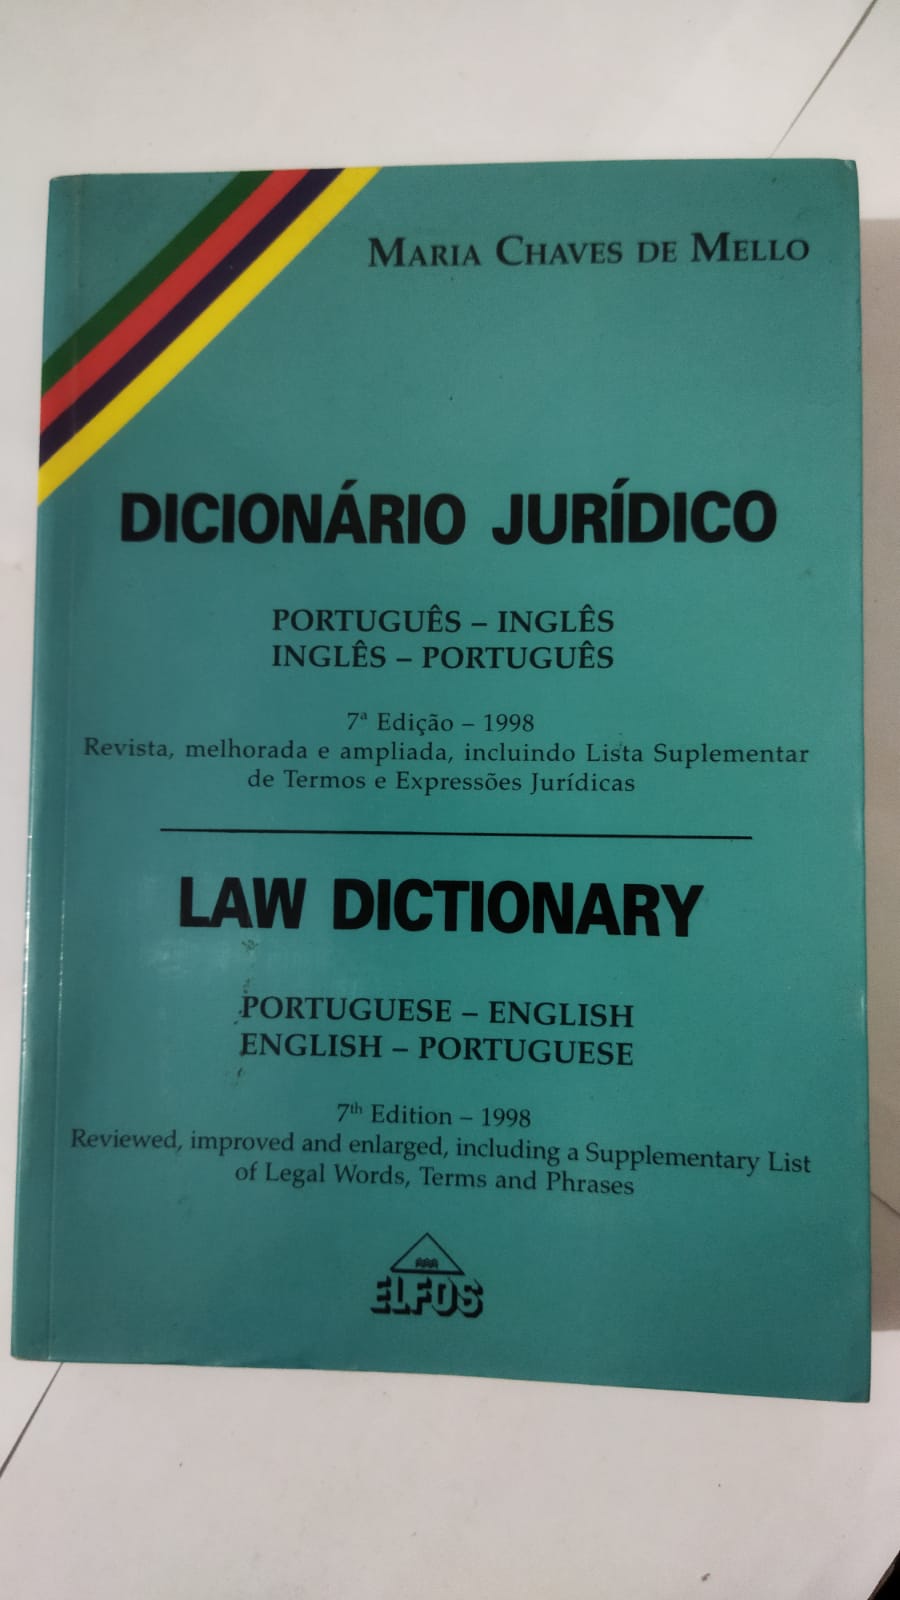 Dicionario ingles juridico